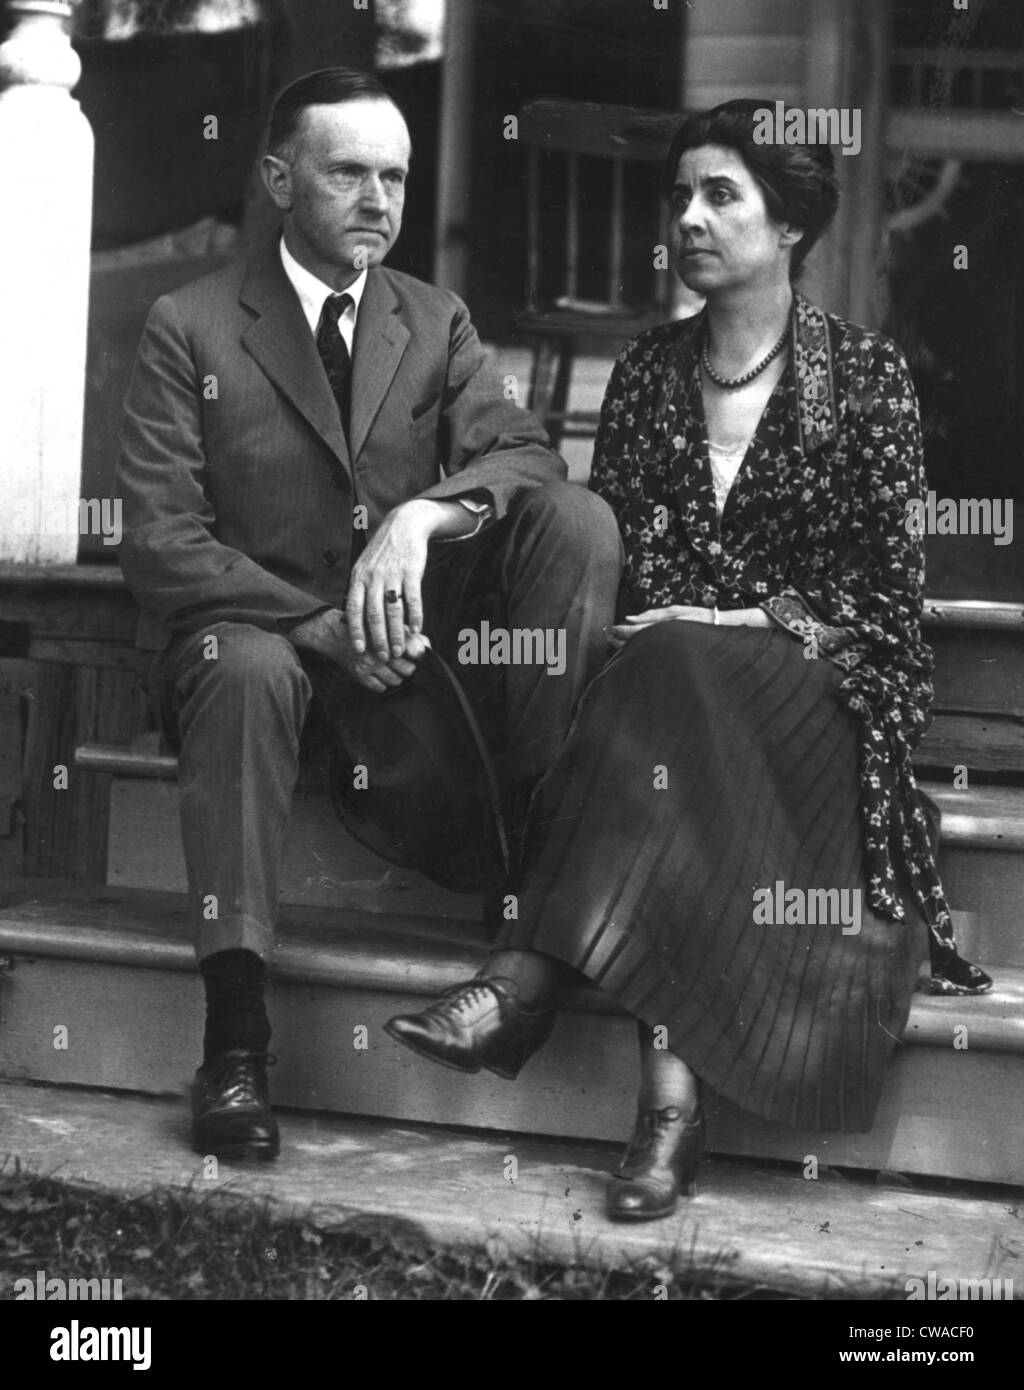 CALVIN COOLIDGE, avec son épouse, ch. 1923. Avec la permission de la CSU : Archives / Everett Collection Banque D'Images